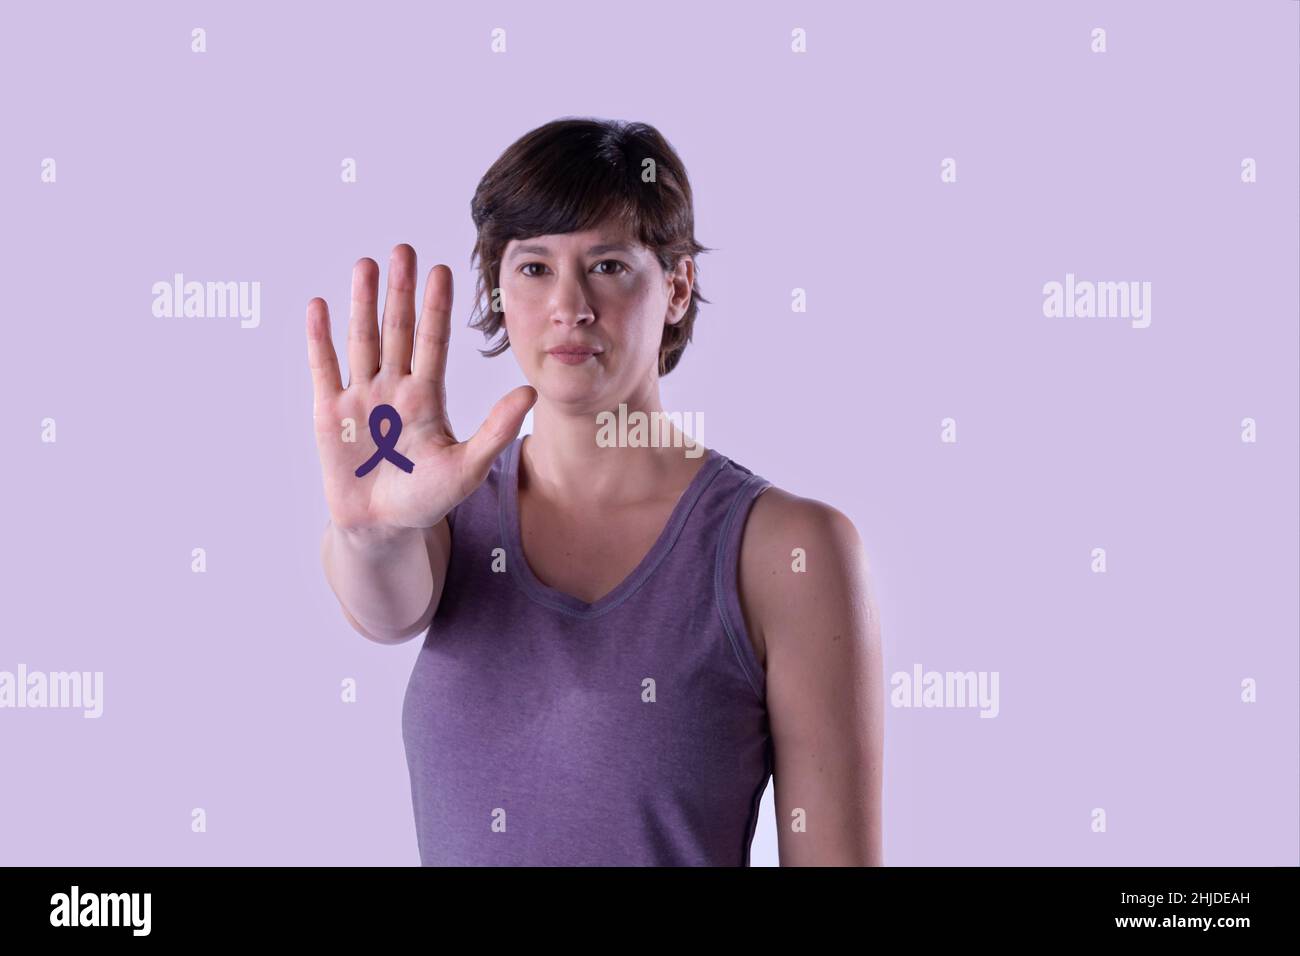 Mujer joven haciendo la señal de freno de mano contra el fondo del estudio lila.Cierre y enfoque selectivo, copia espacio. Concepto de feminismo, igualdad de derechos. Foto de stock